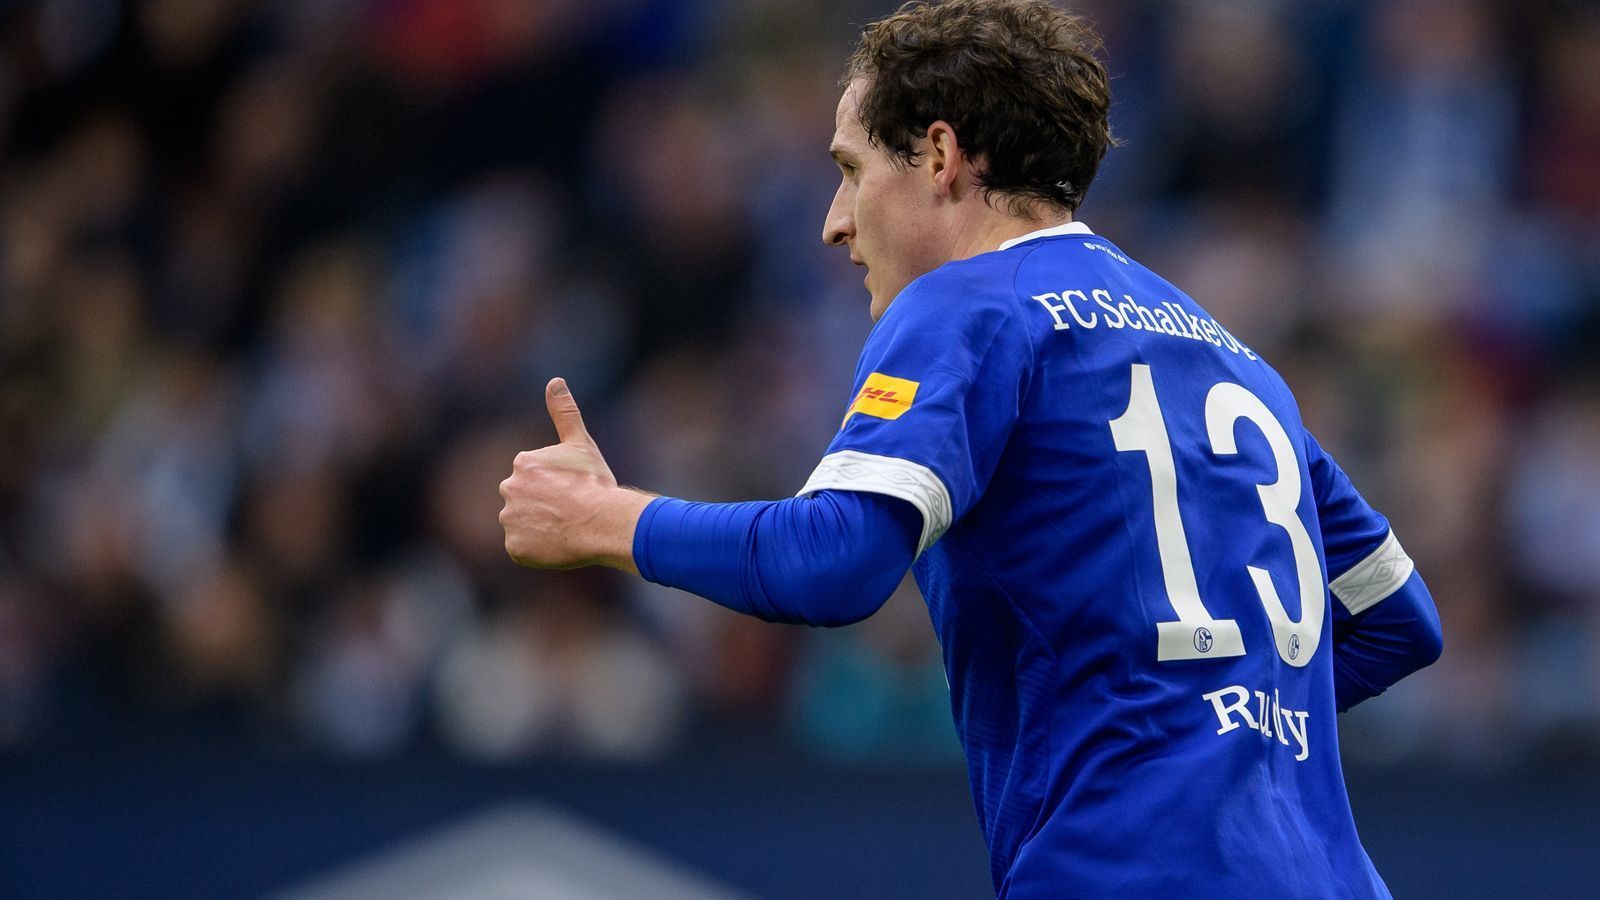 
                <strong>Sebastian Rudy (FC Schalke 04)</strong><br>
                Kommt in der 67. Minute für Caligiuri. Viel zu tun hat er gegen neun Dortmunder defensiv nicht. Offensiv hält er sich zurück. ran-Note: 4
              